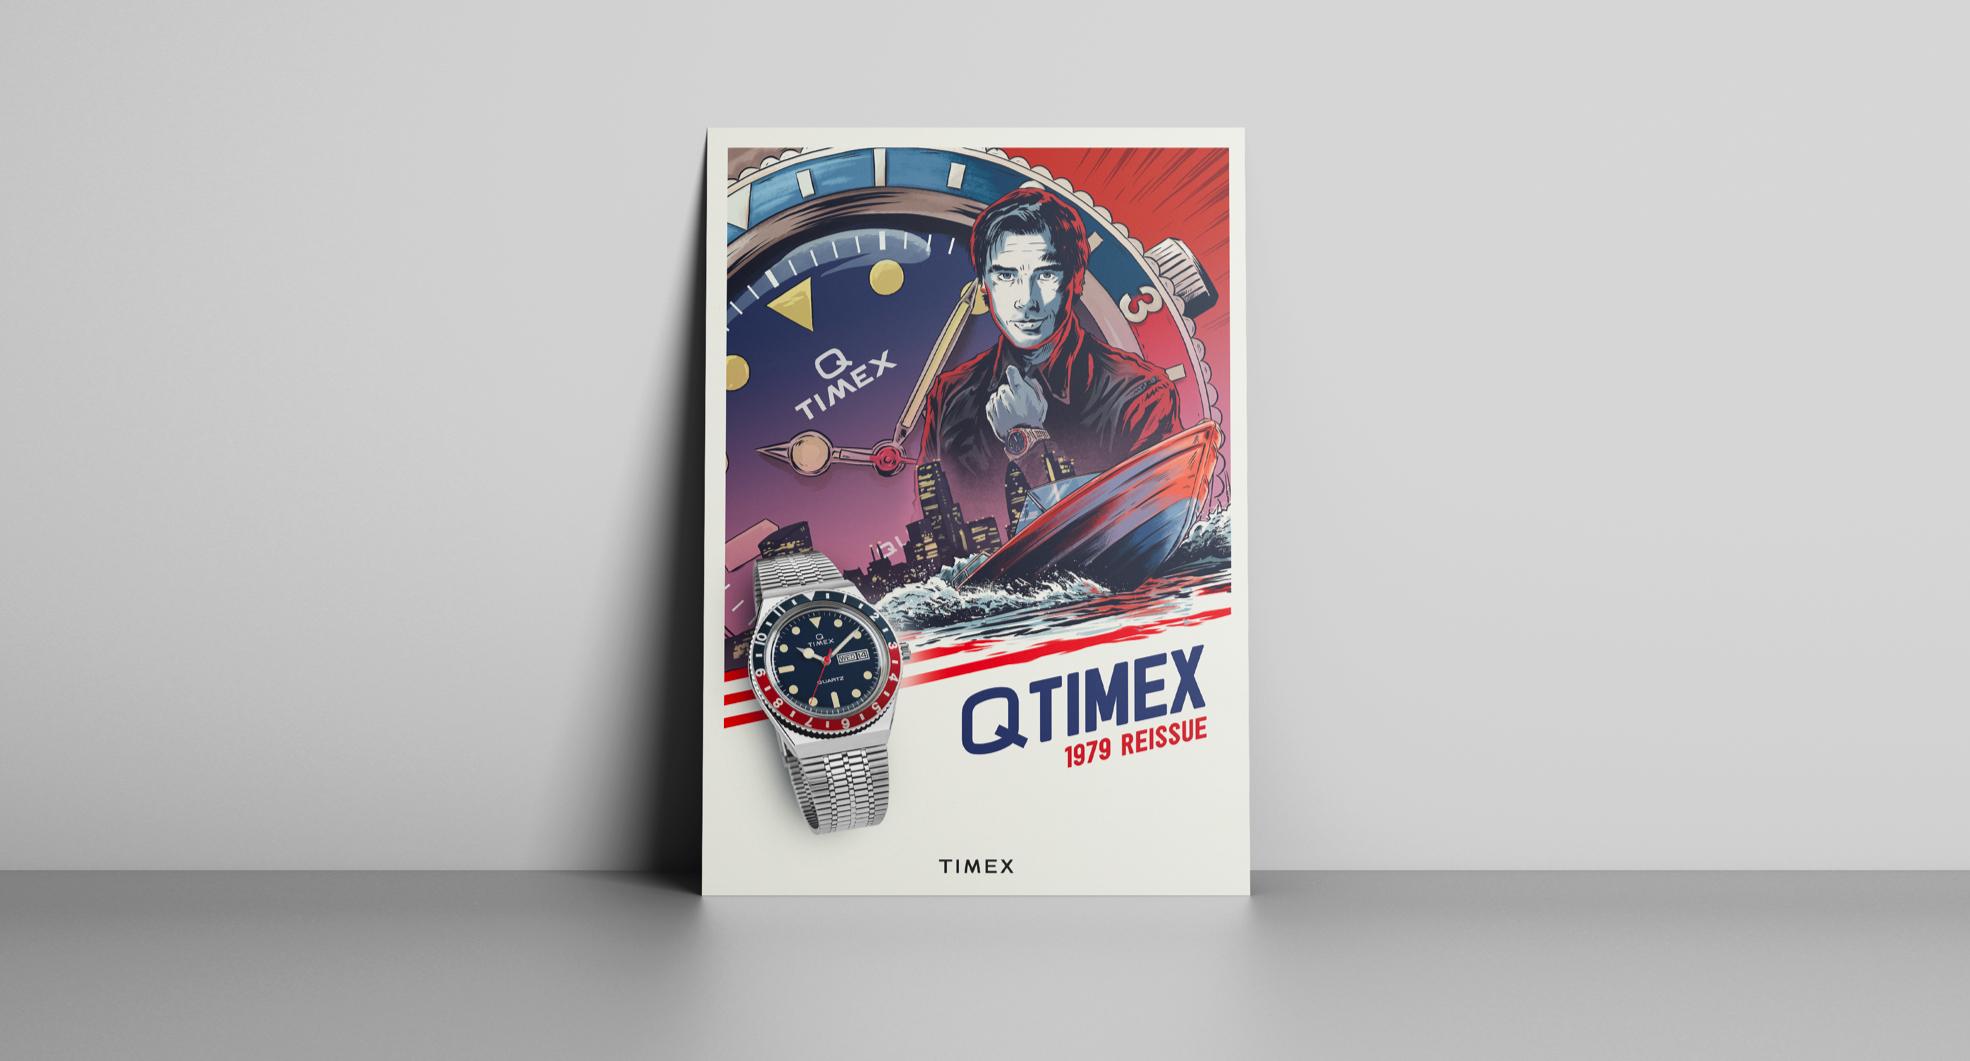 INTERNE_Q-TIMEX_2